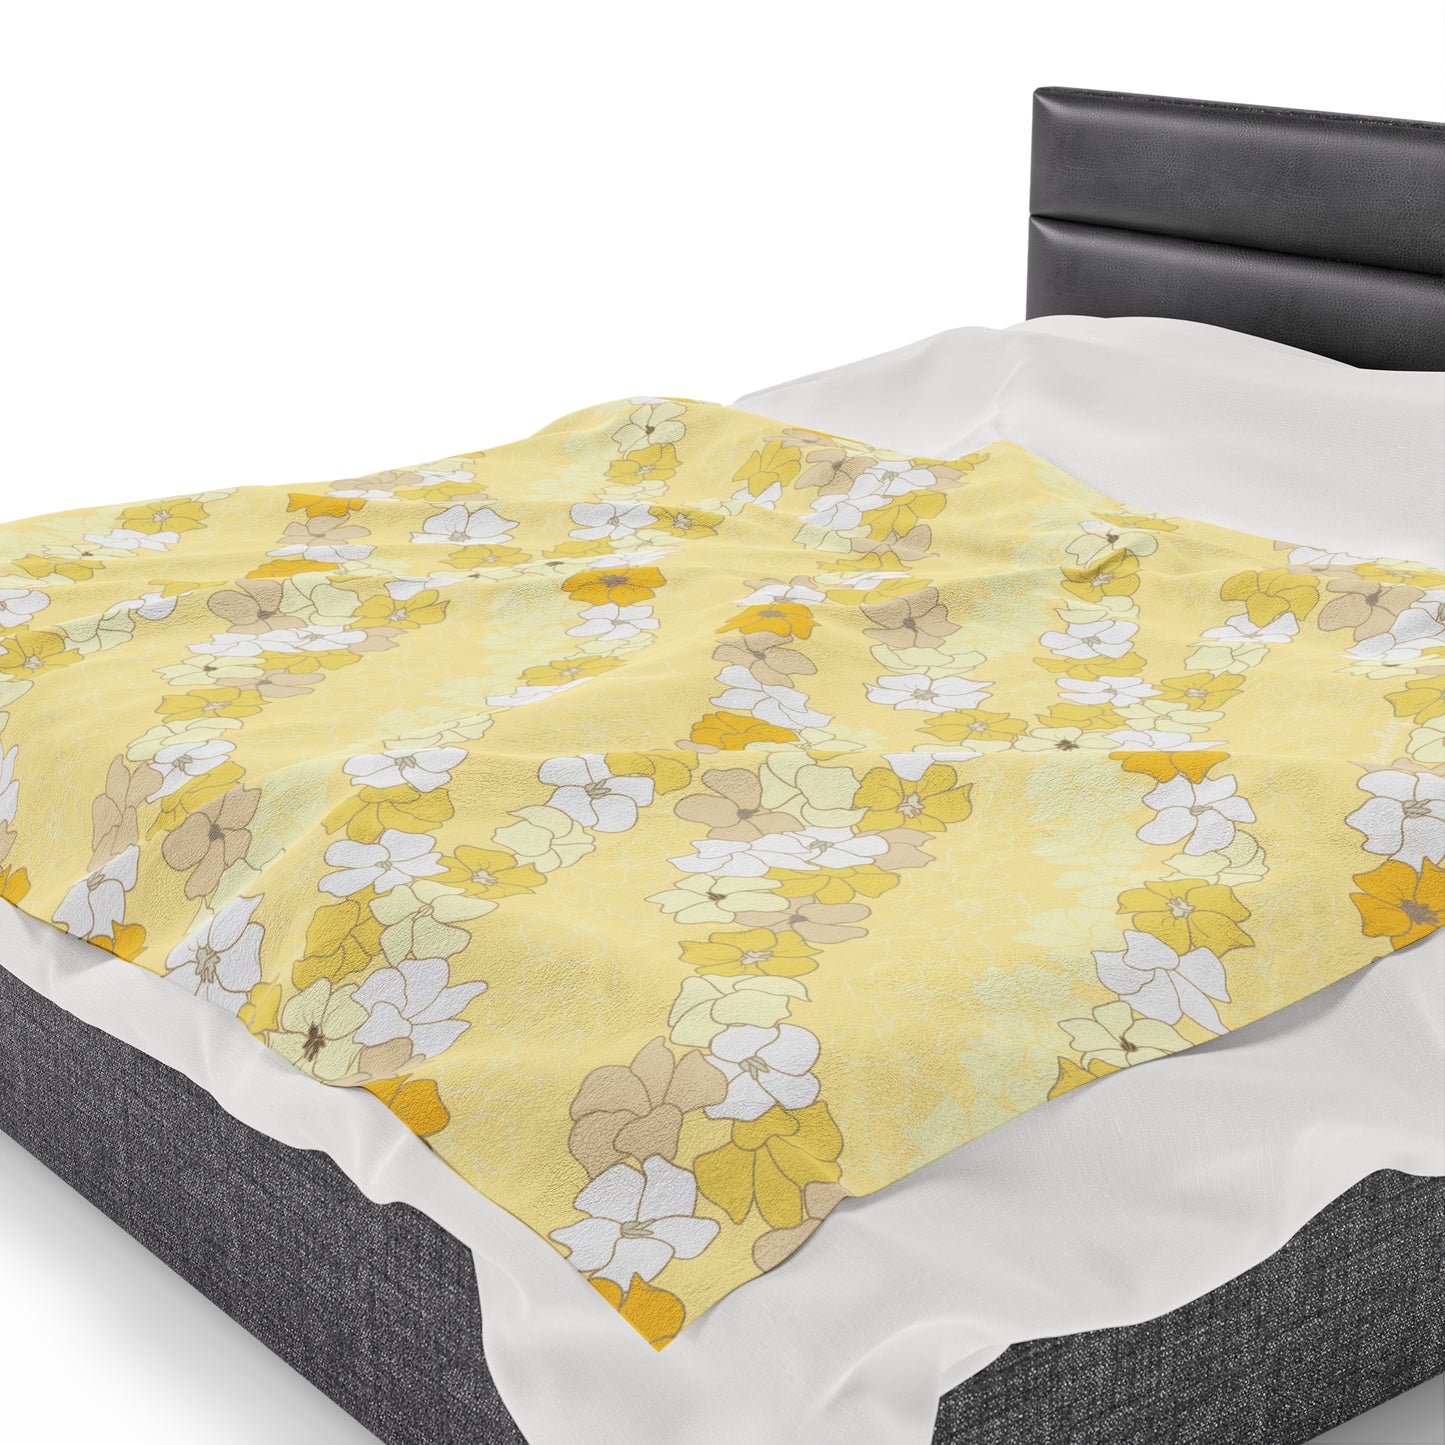 Incredibly Soft Plush Blanket- Puakenikeni En Face Flower Leis in Yellow